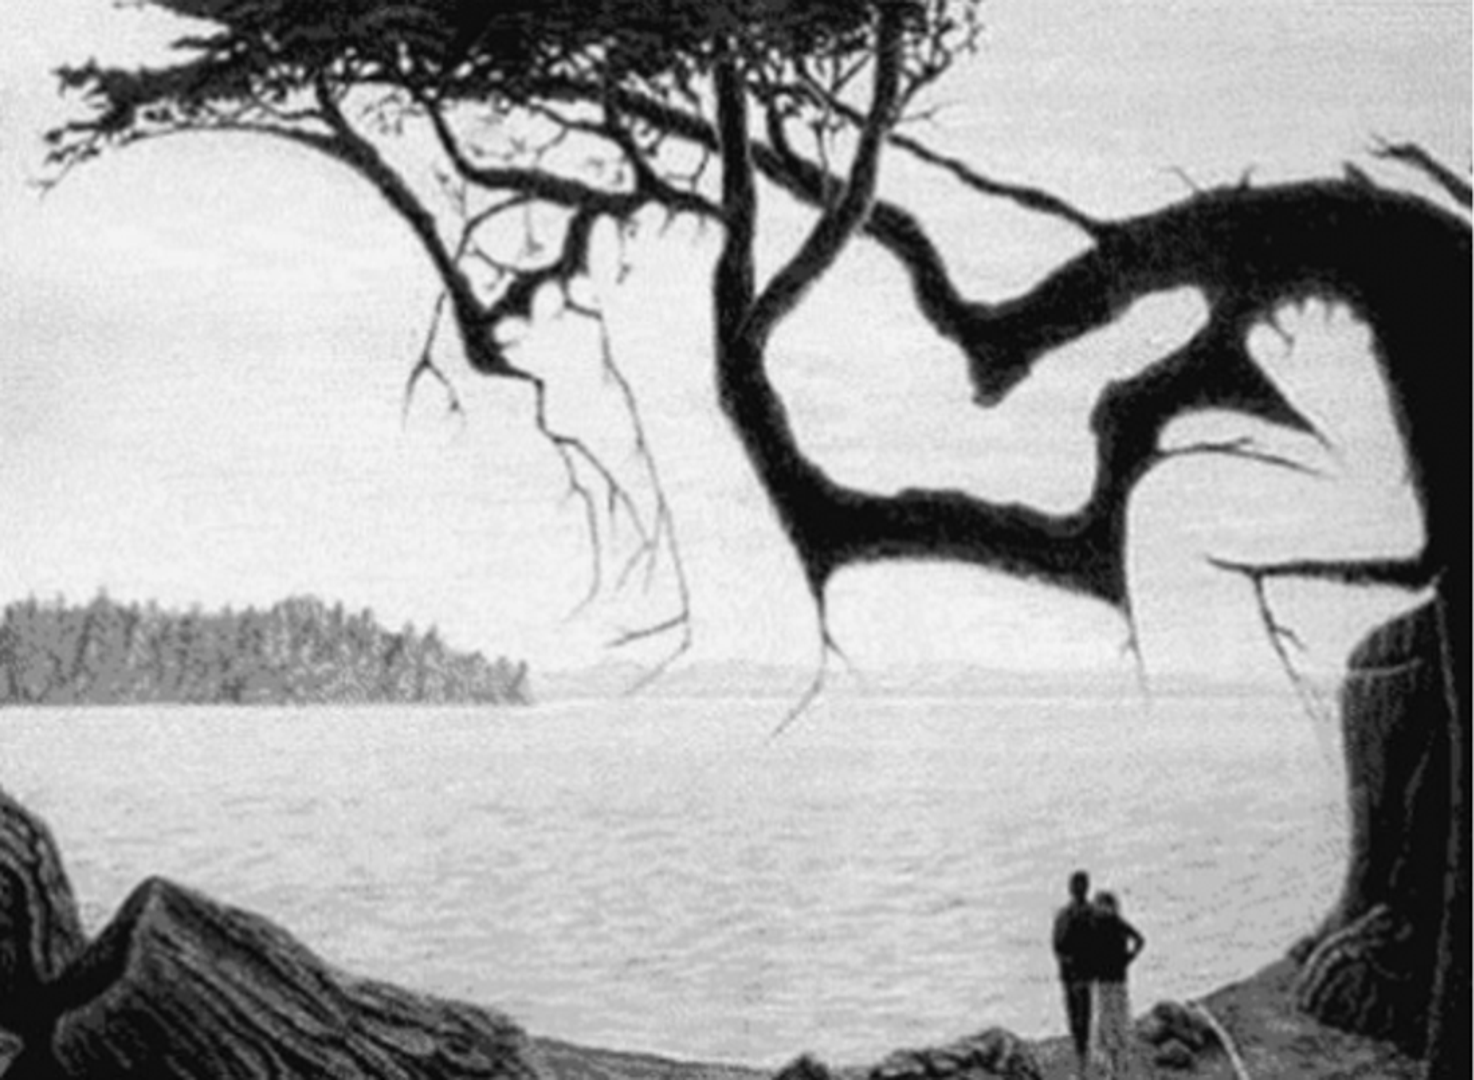 Ova crno-bijela fotografija na prvi pogled prikazuje samo par koji stoji pokraj jezera. No, na fotografiji se nalazi još jedna osoba! Vidite li gdje se nalazi? Odgovor slijedi u nastavku fotogalerije!